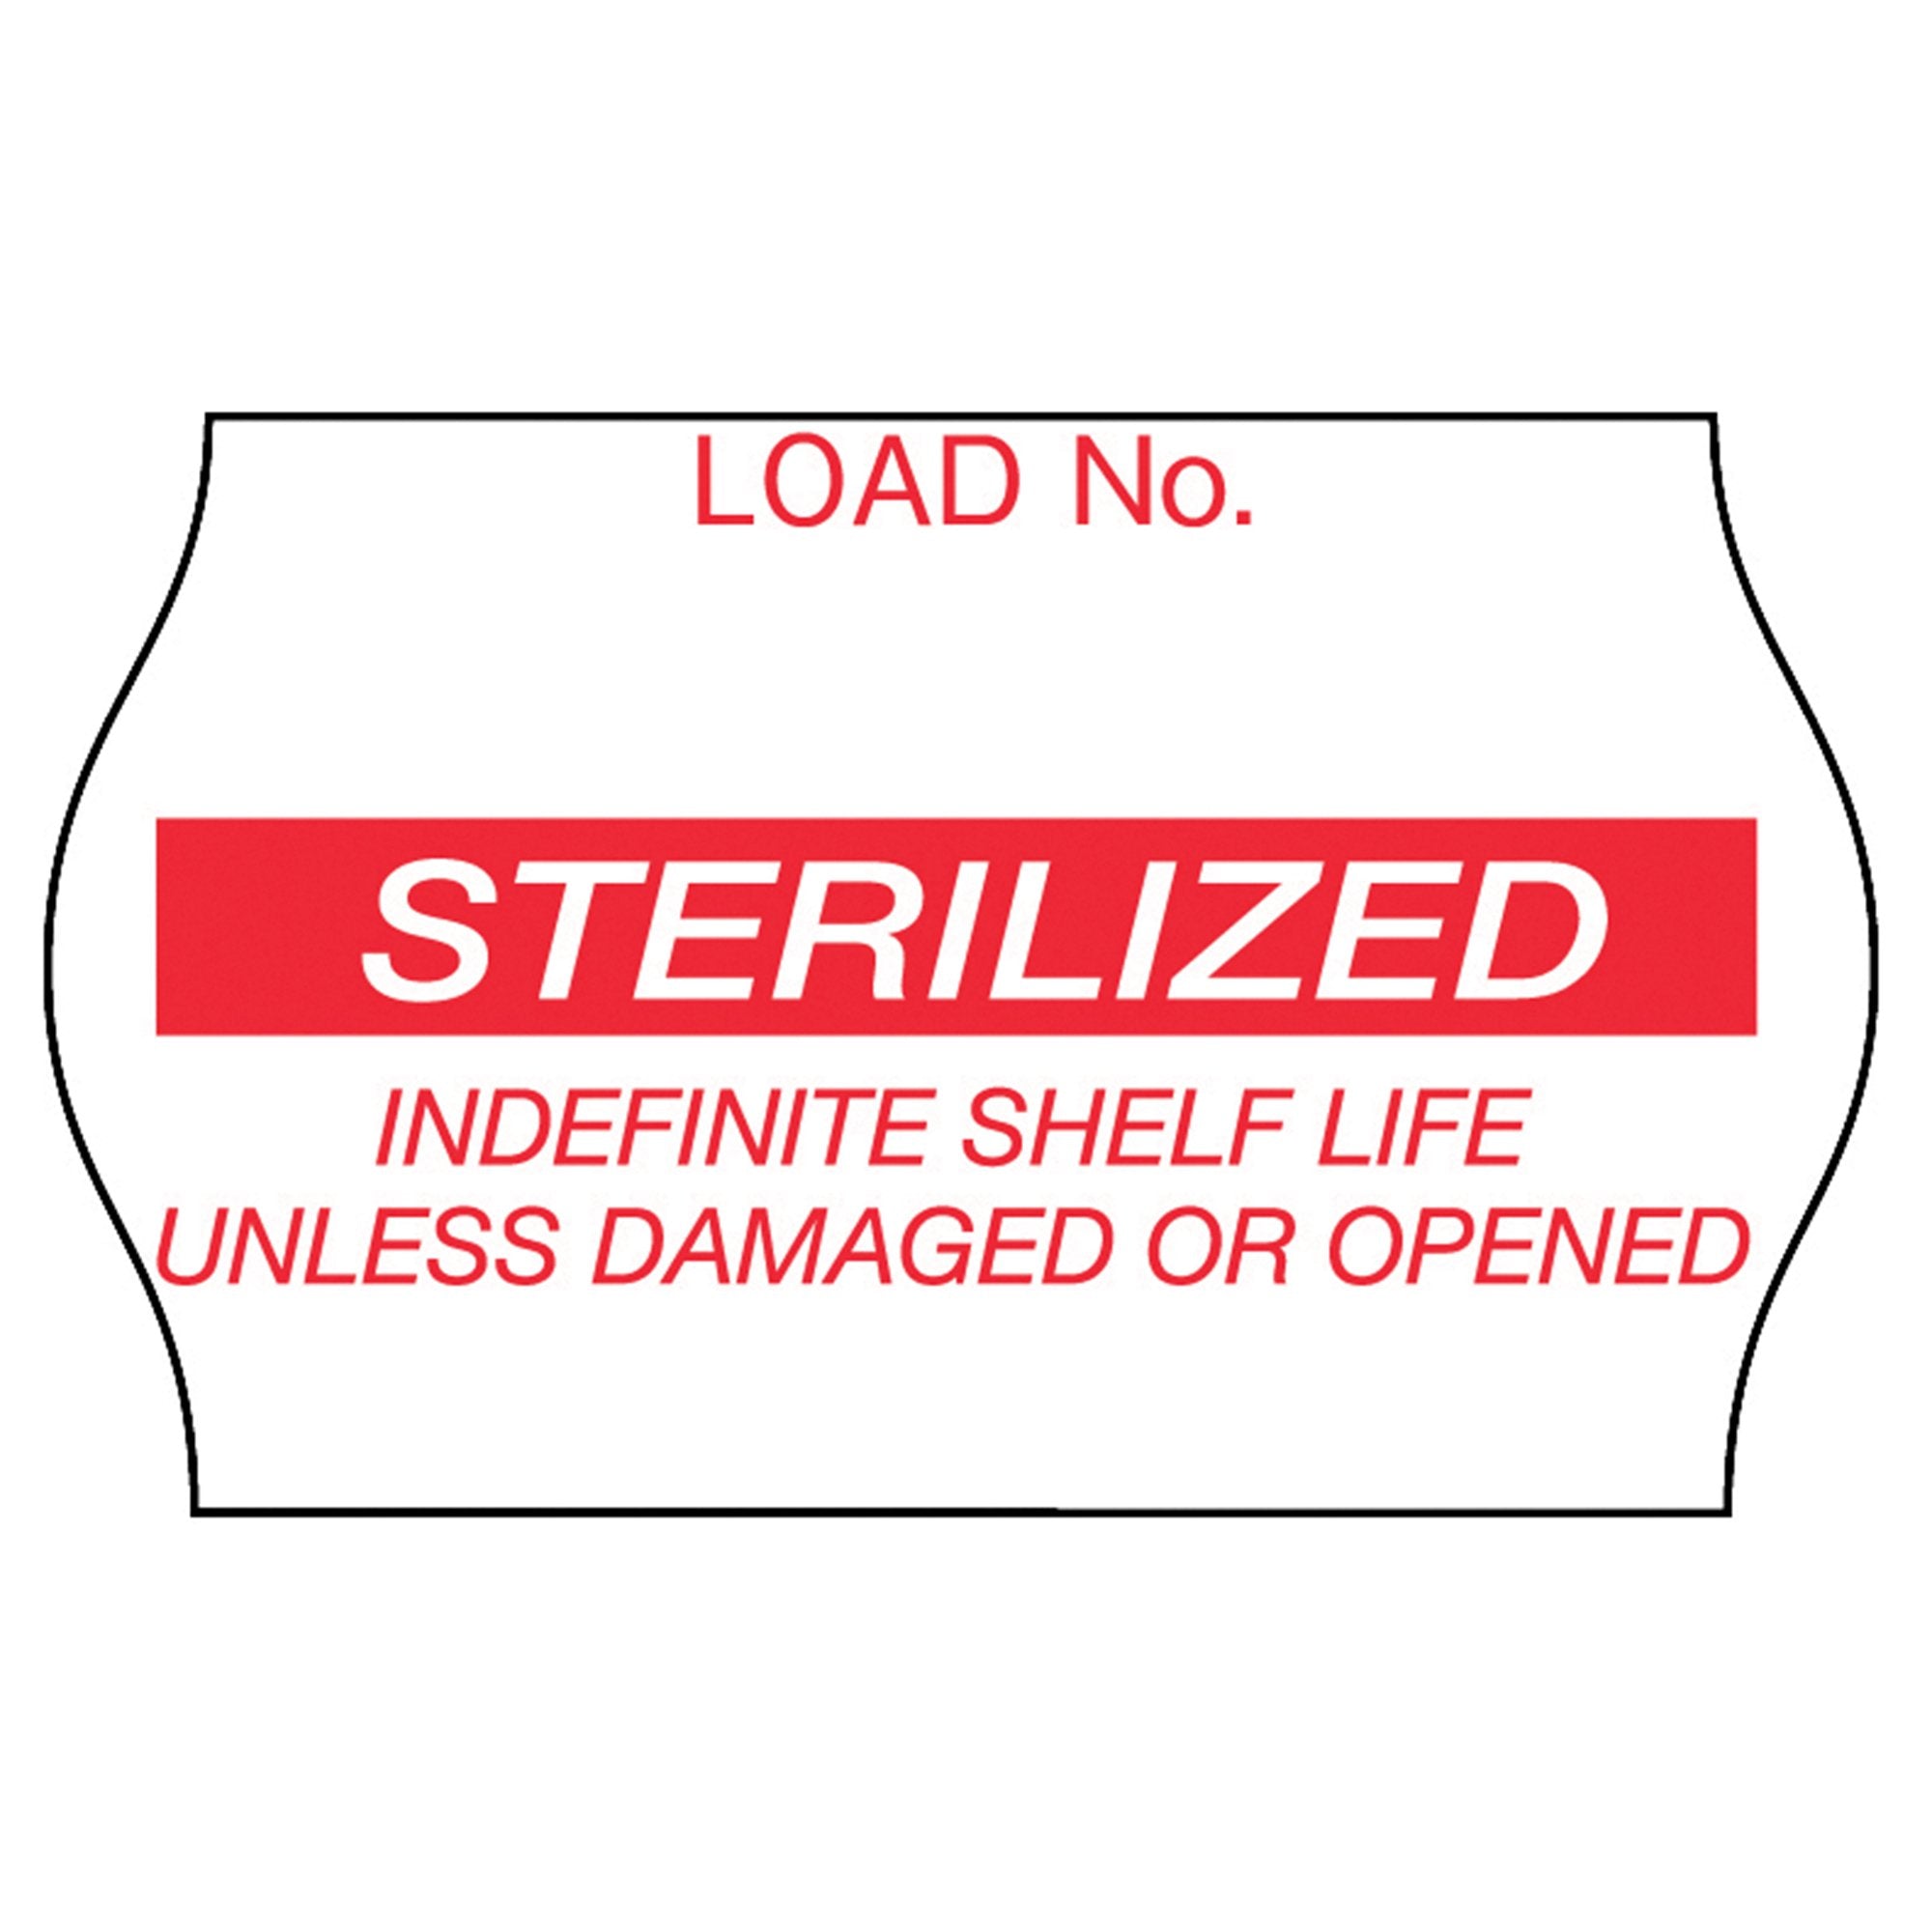 Pre-Printed Label Comply Laboratory Use Red Label Sterilized Red Sterilization Label 5/8 X 1-1/8 Inch